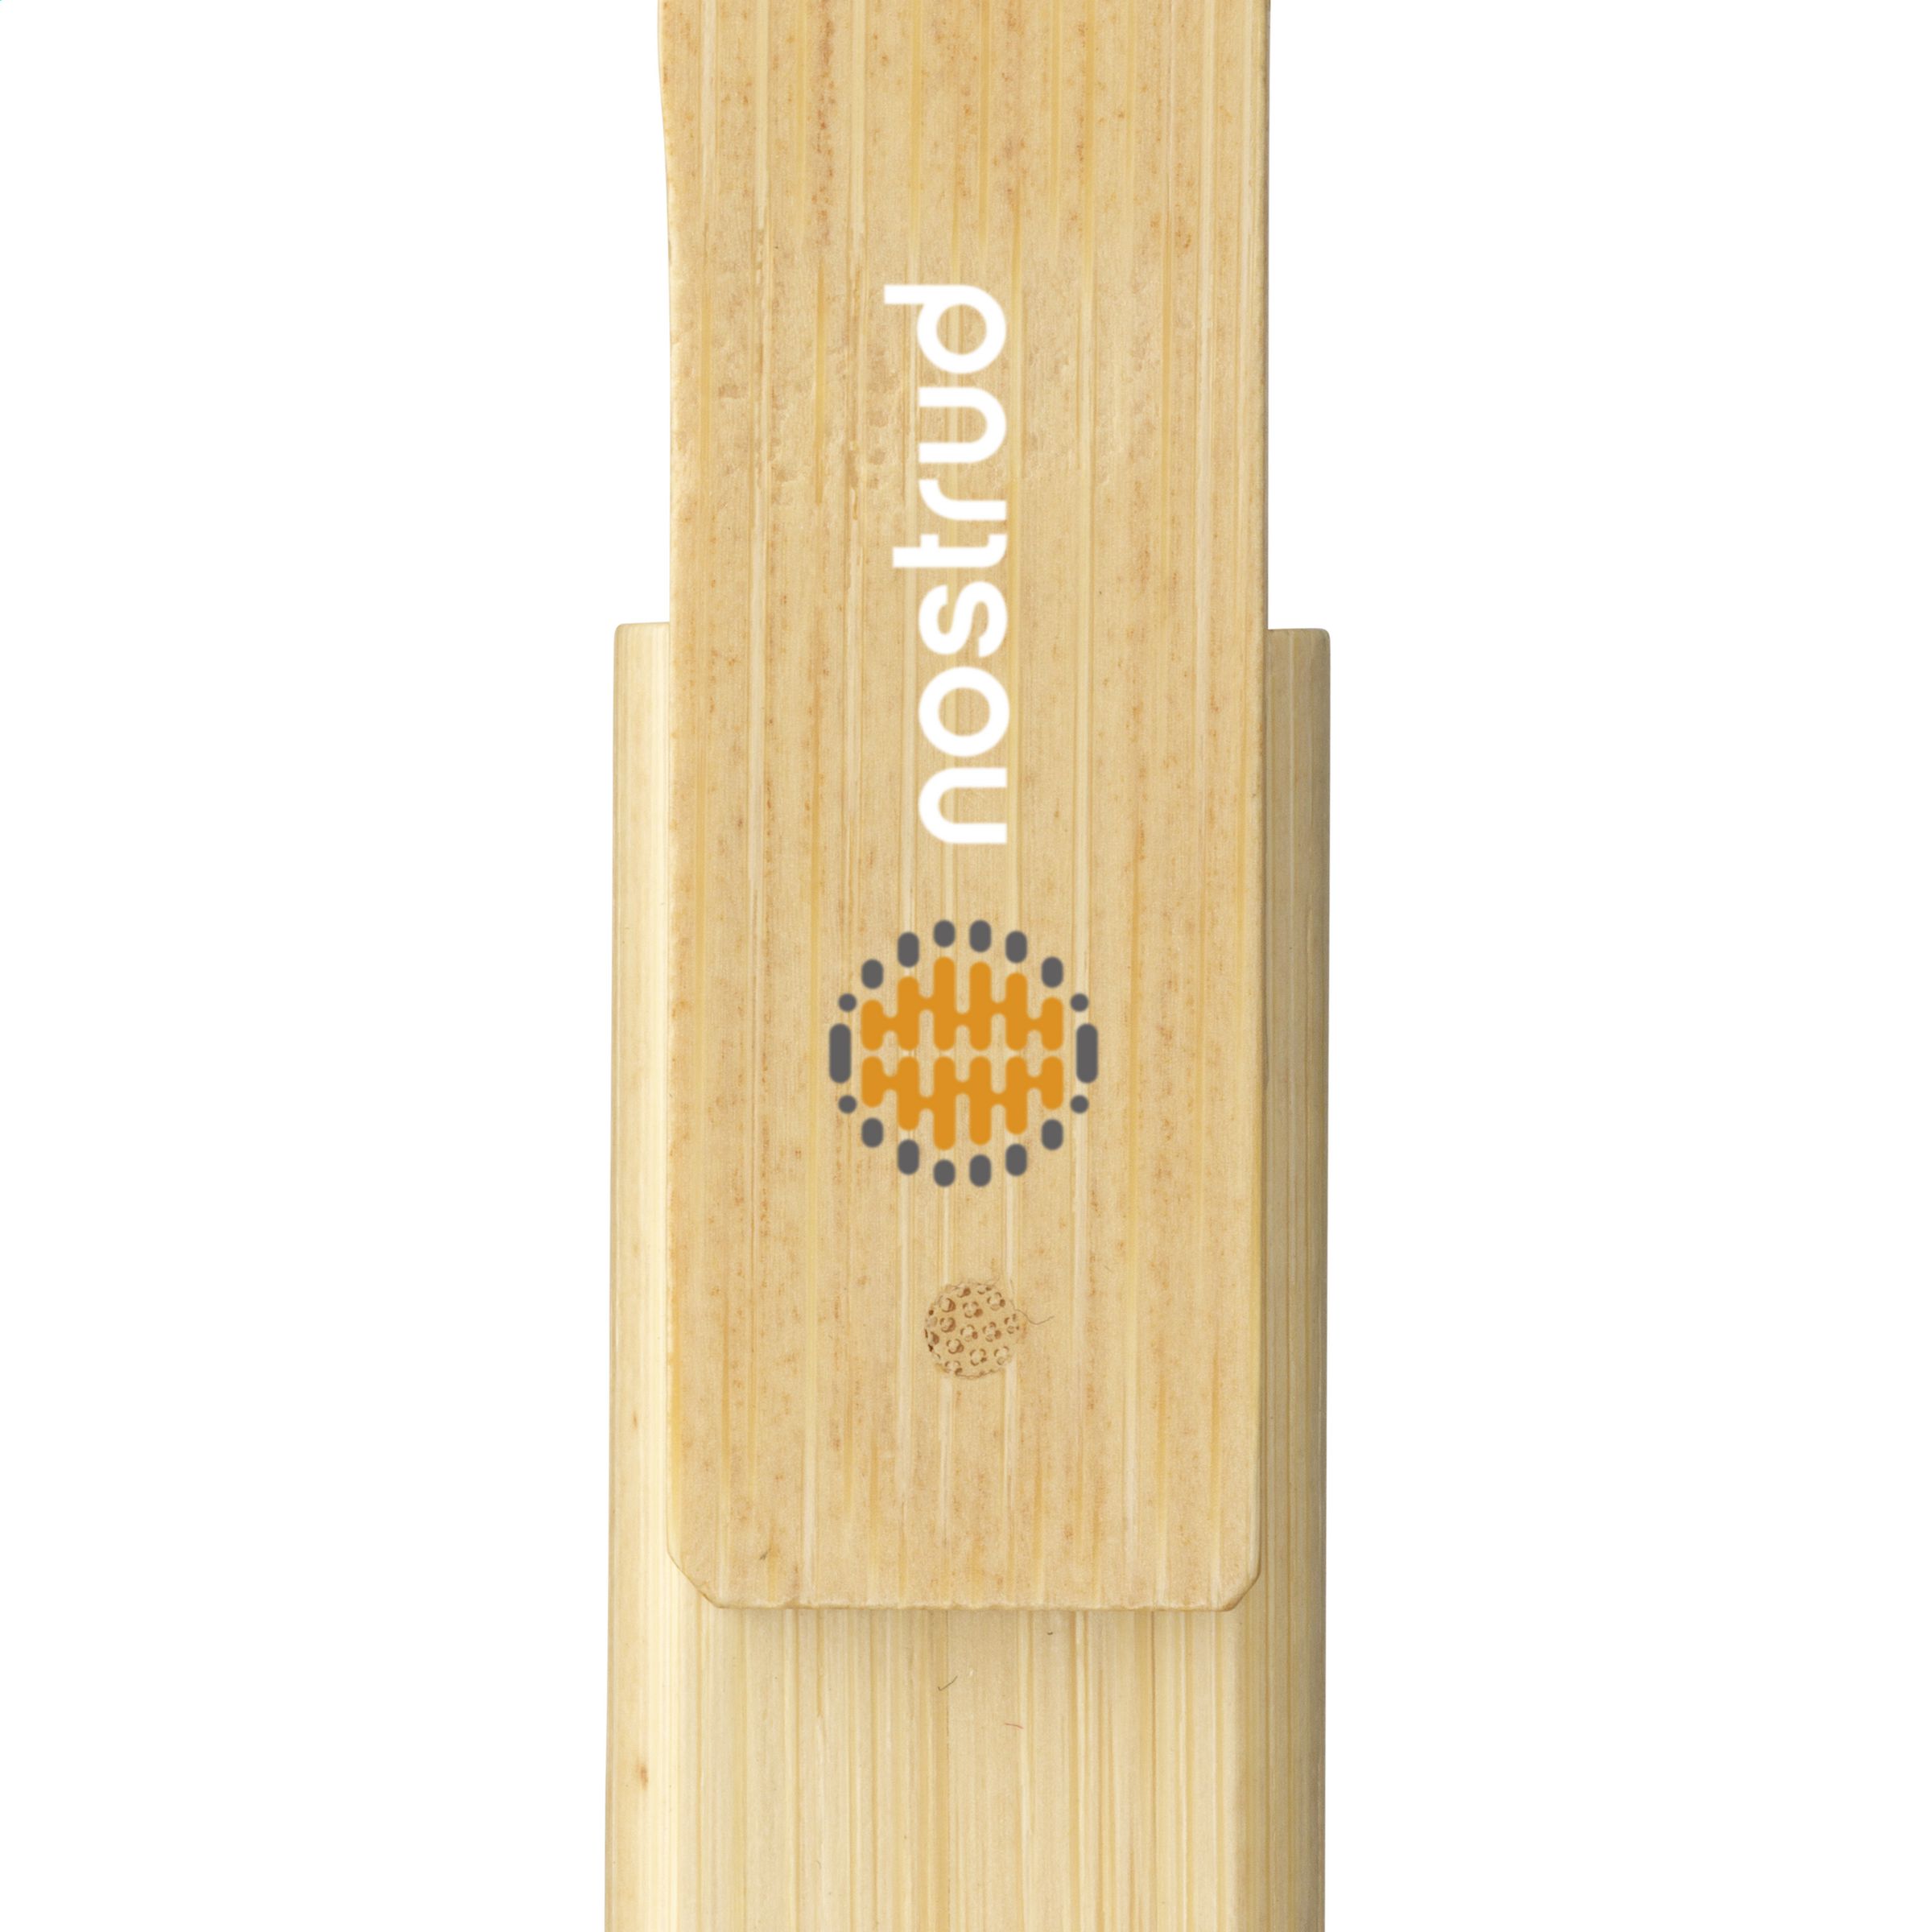 Chiavetta USB 2.0 in Bamboo ECO - Fontanellato